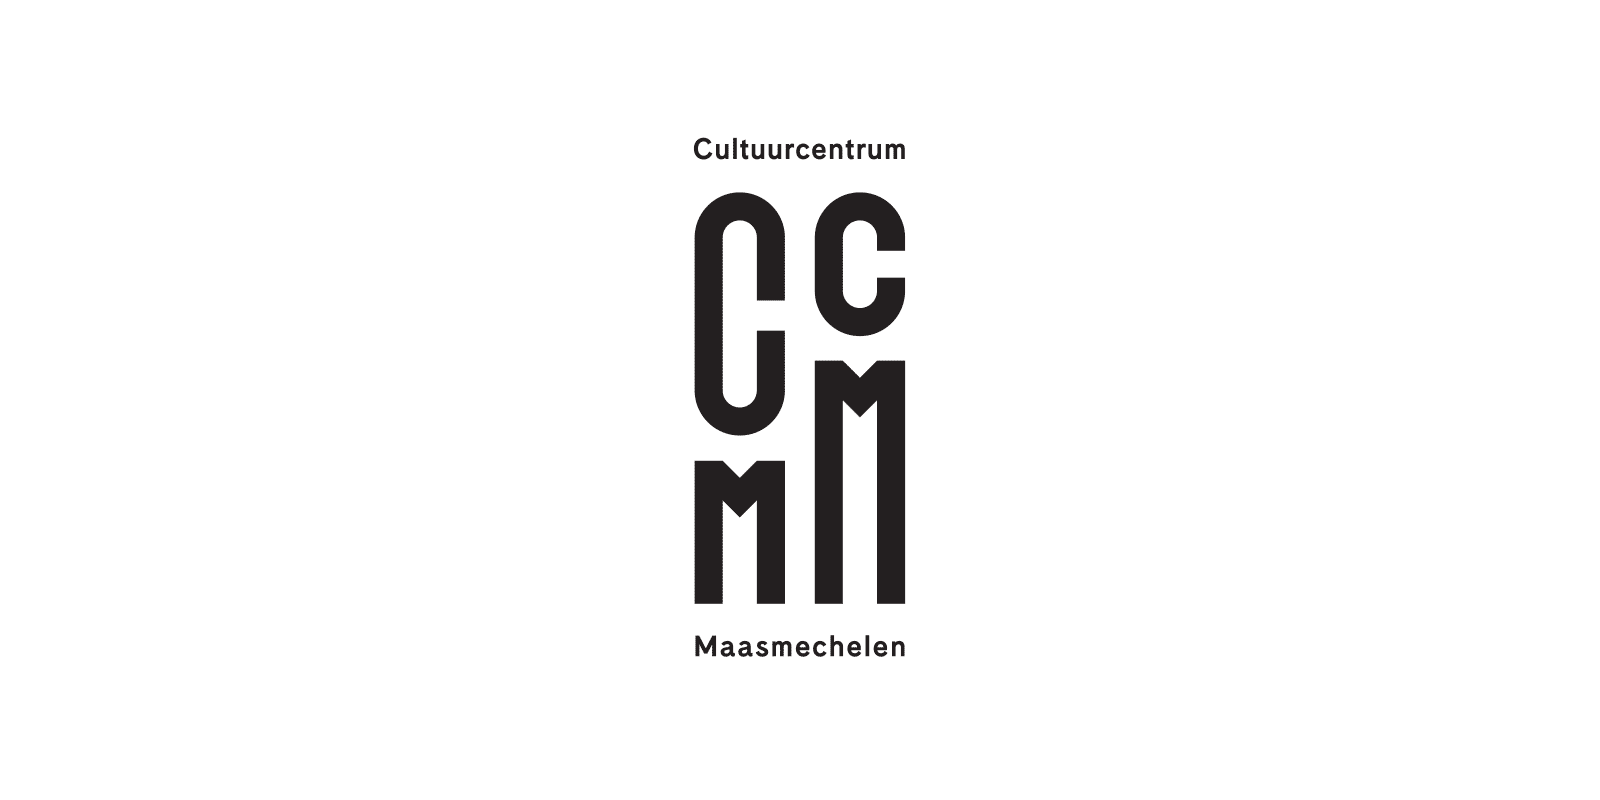 比利时Maasmechelen文化中心(CCMM)视觉形象设计